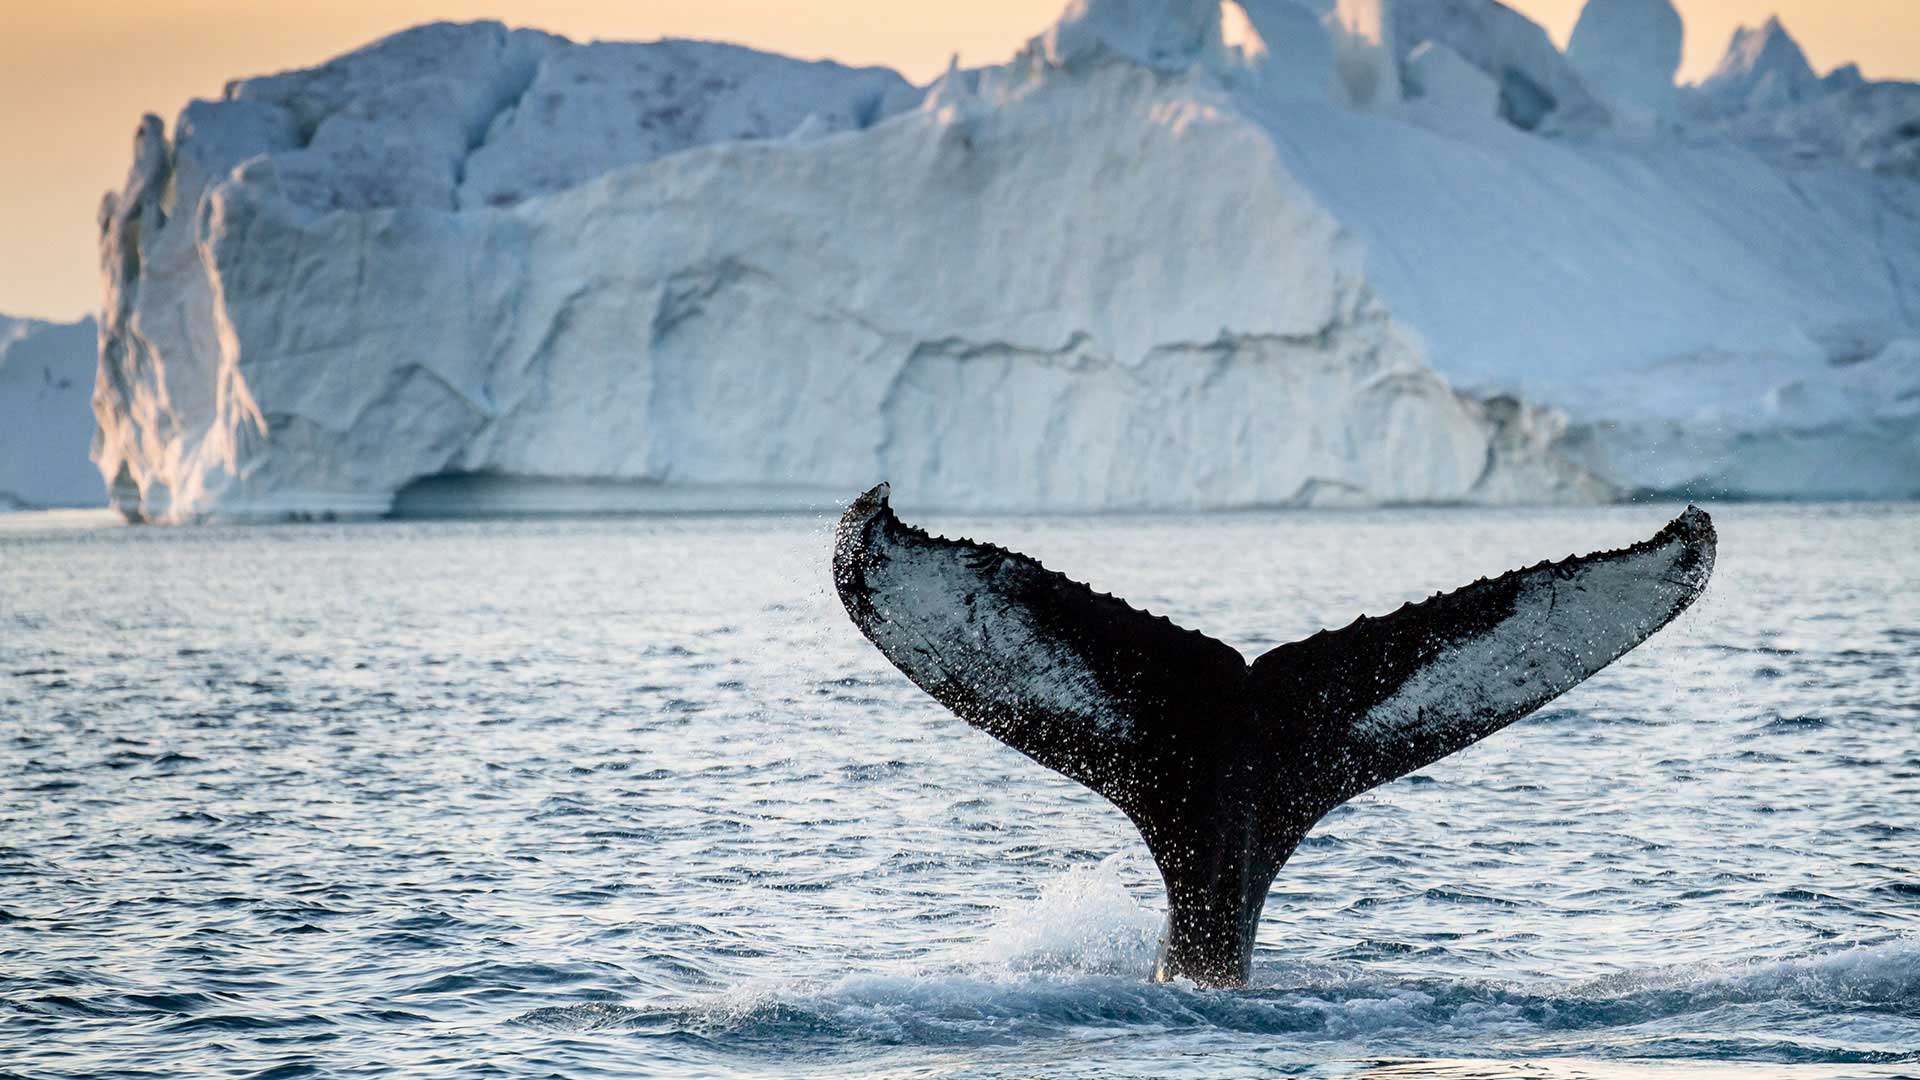 Whale Watching in Greenland - ©Julie Skotte - greenland.com